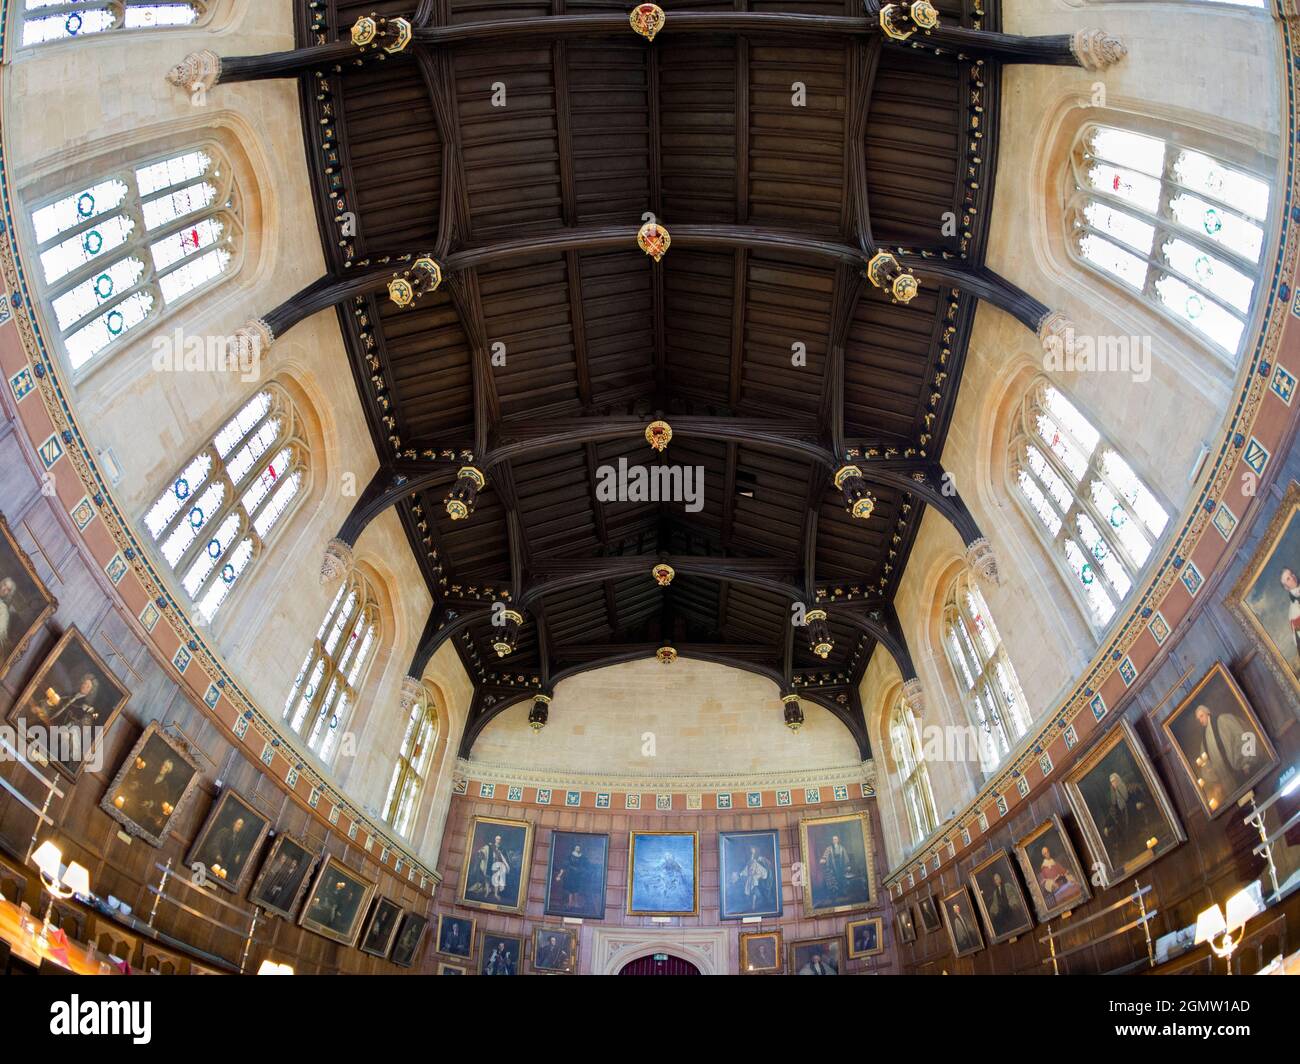 Christ Church wurde 1546 gegründet und ist eines der ältesten, reichsten und großartigsten Colleges der Universität Oxford, das über starke Medien und literarische Verbindungen verfügt Stockfoto